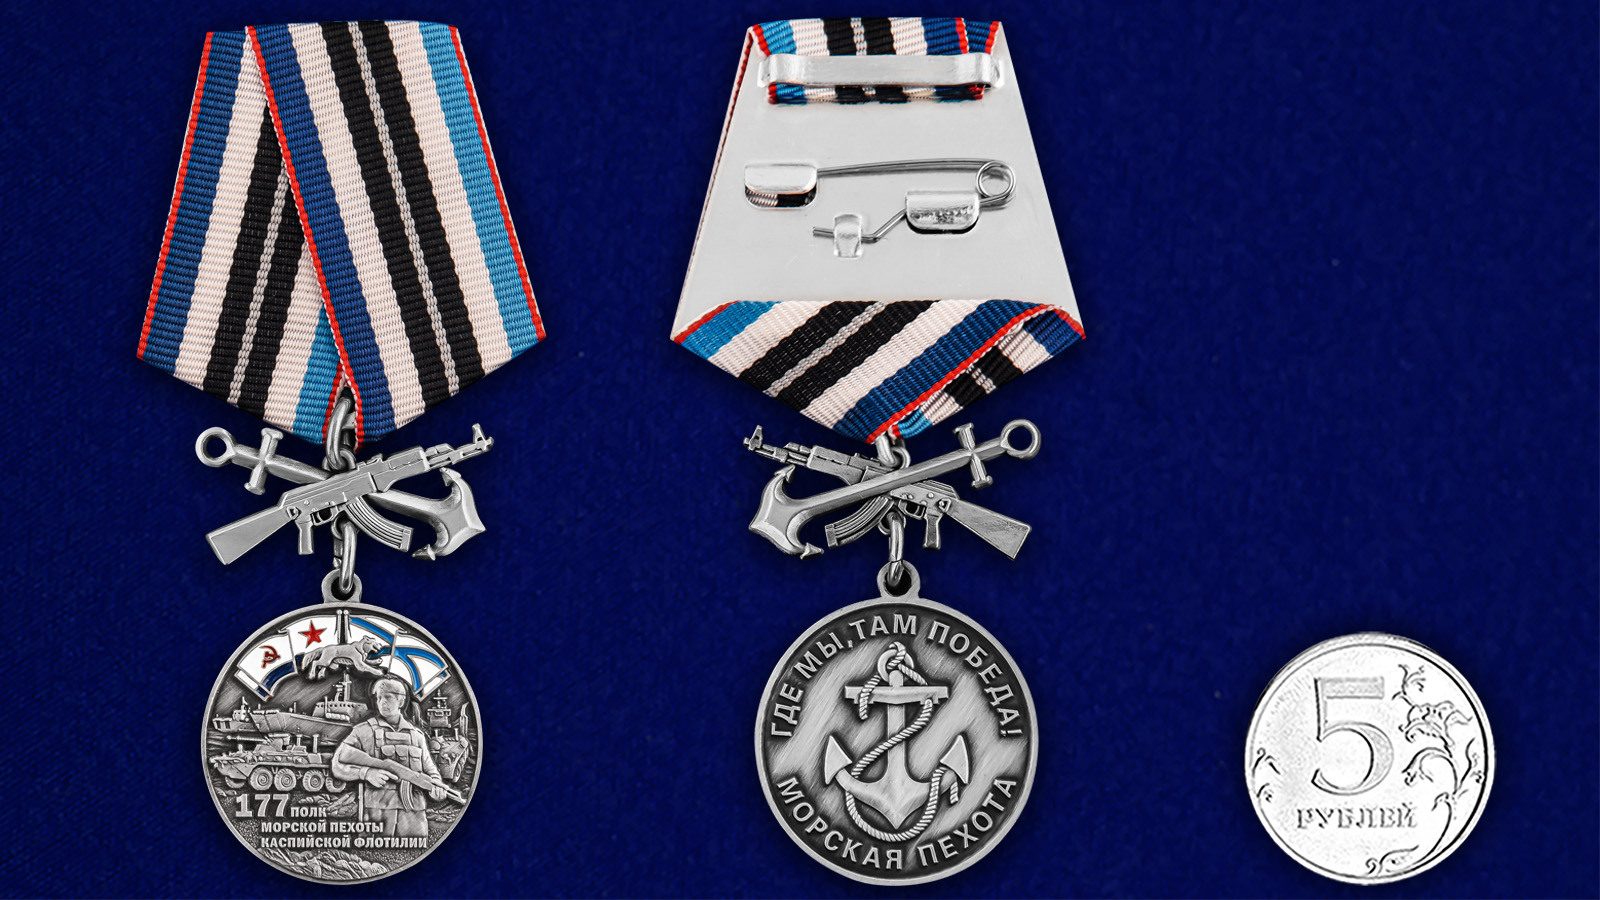 Купить медаль 177-й полк морской пехоты выгодно